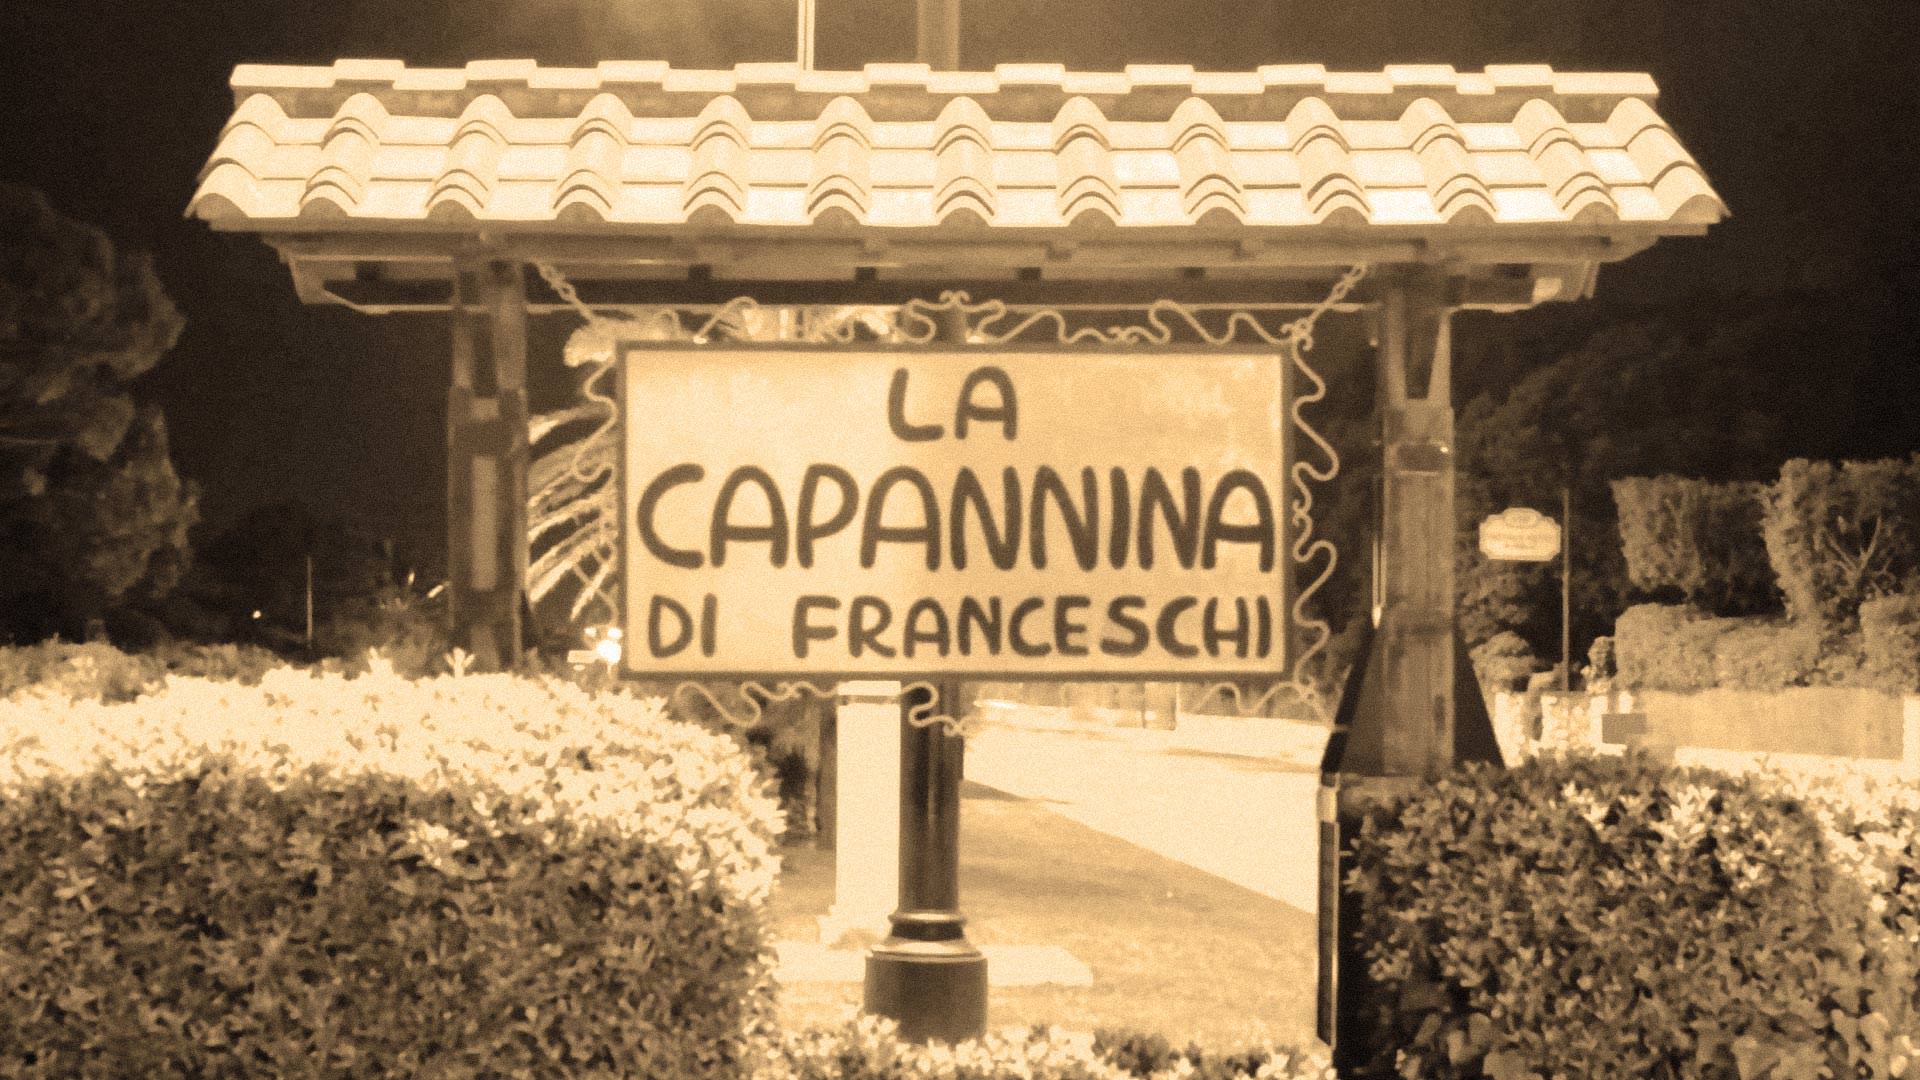 Agosto da record per La Capannina di Franceschi